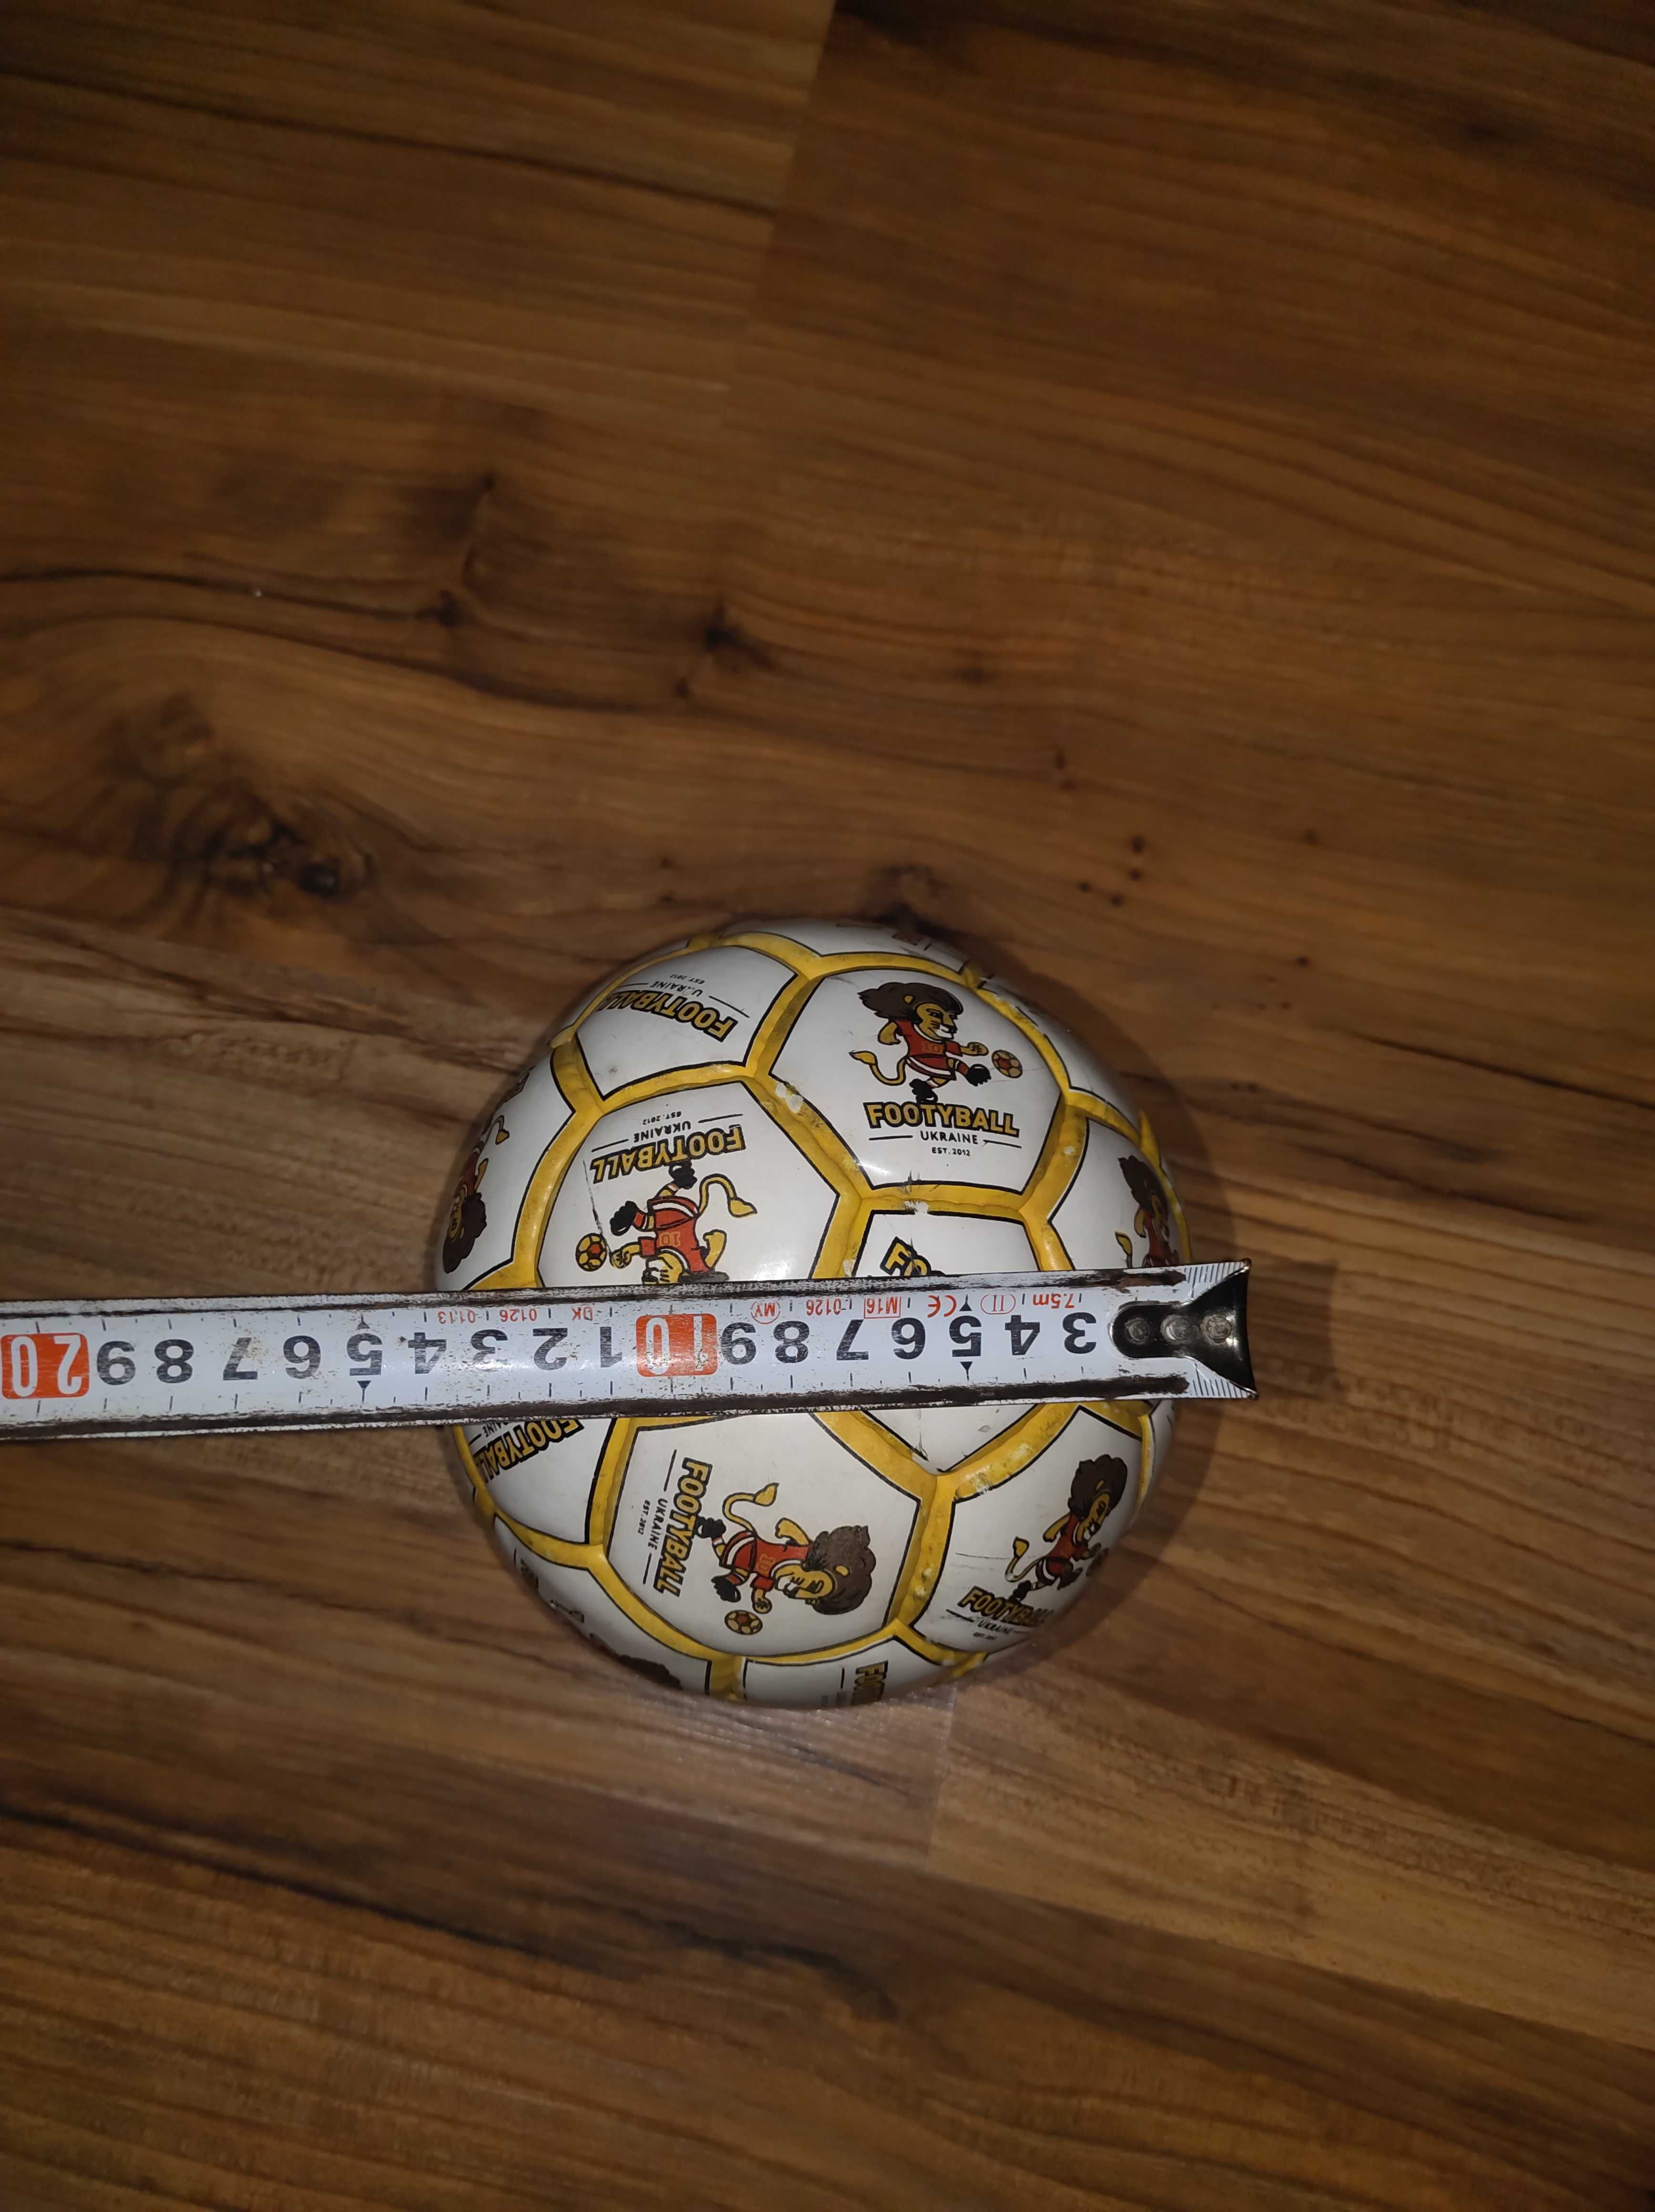 М'яч футбольний №2 - ПУ, для дітей до 8 років, в діаметрі 14 см.